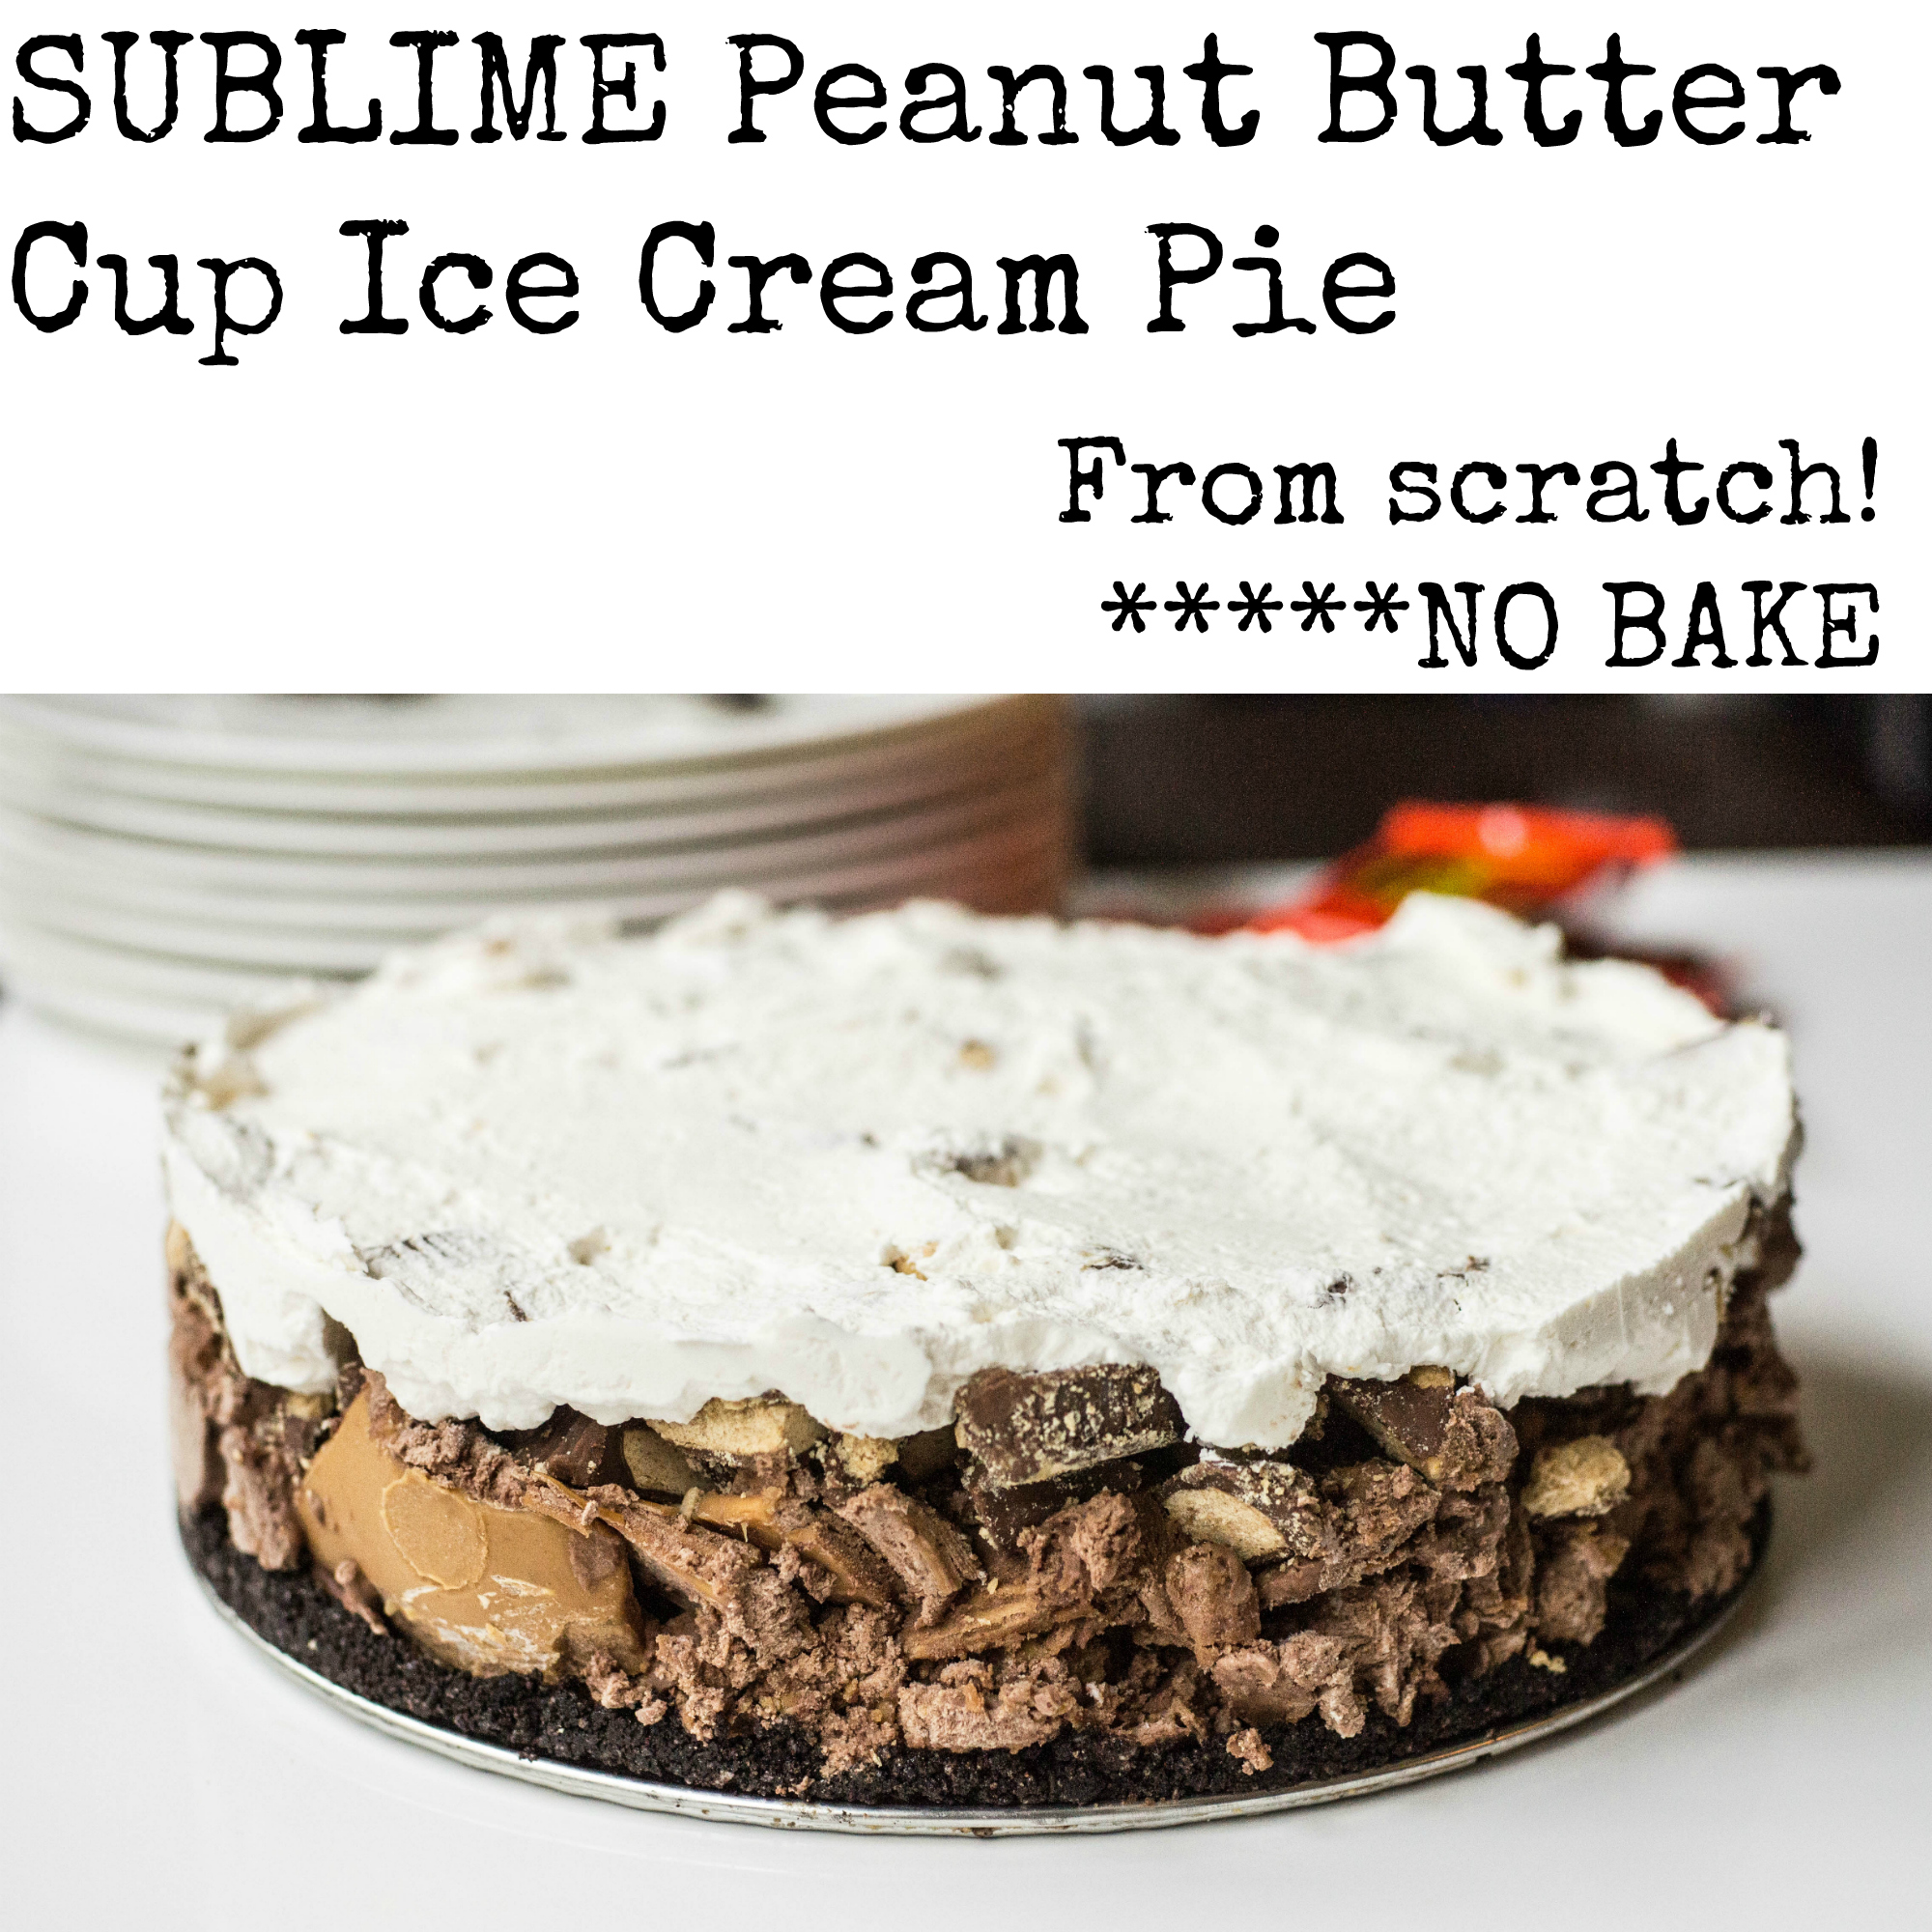 SUBLIME Peanut Butter Cup Ice Cream Pie!!!